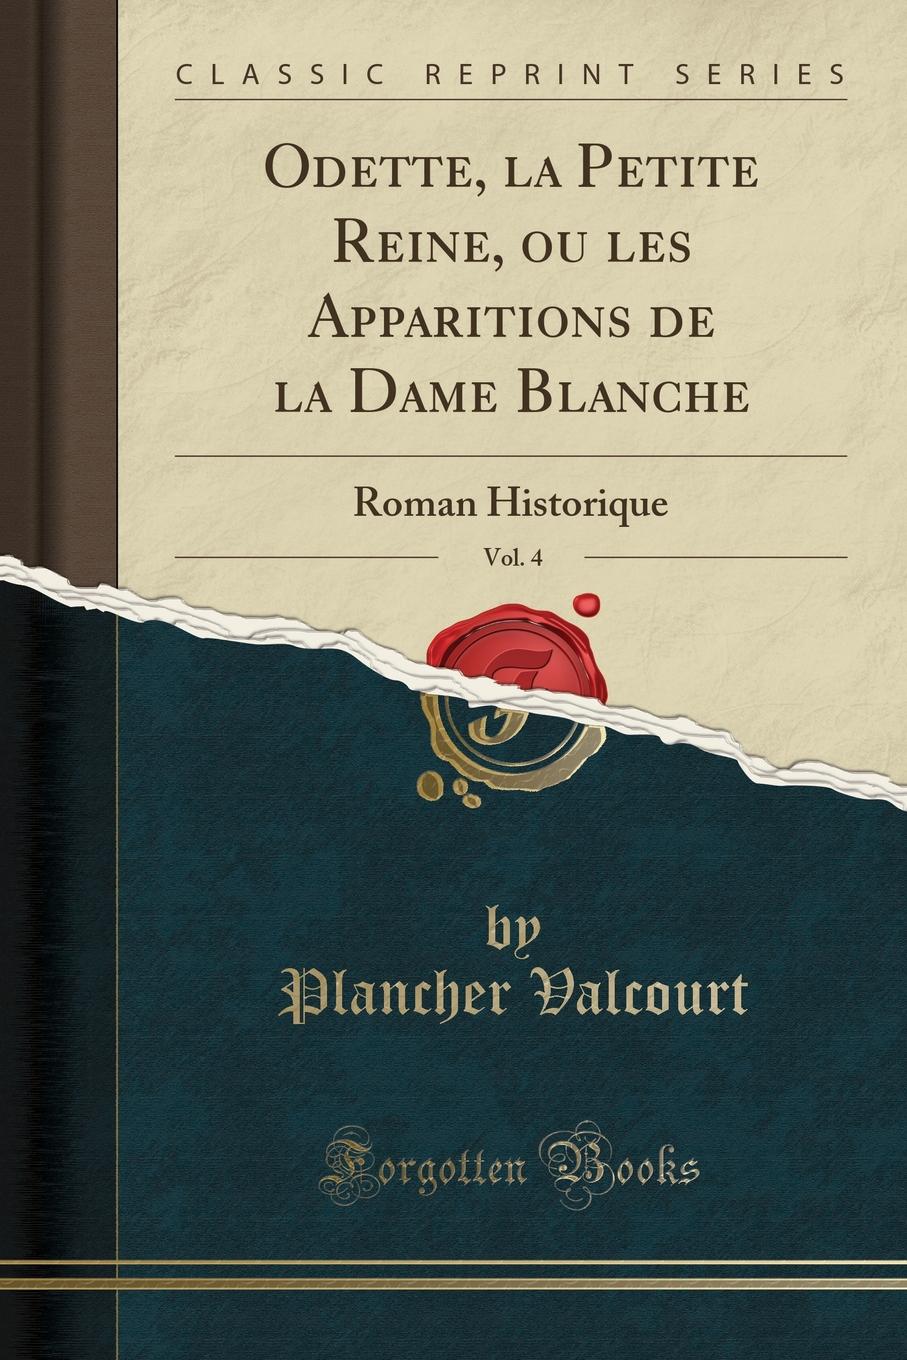 Plancher Valcourt Odette, la Petite Reine, ou les Apparitions de la Dame Blanche, Vol. 4. Roman Historique (Classic Reprint)